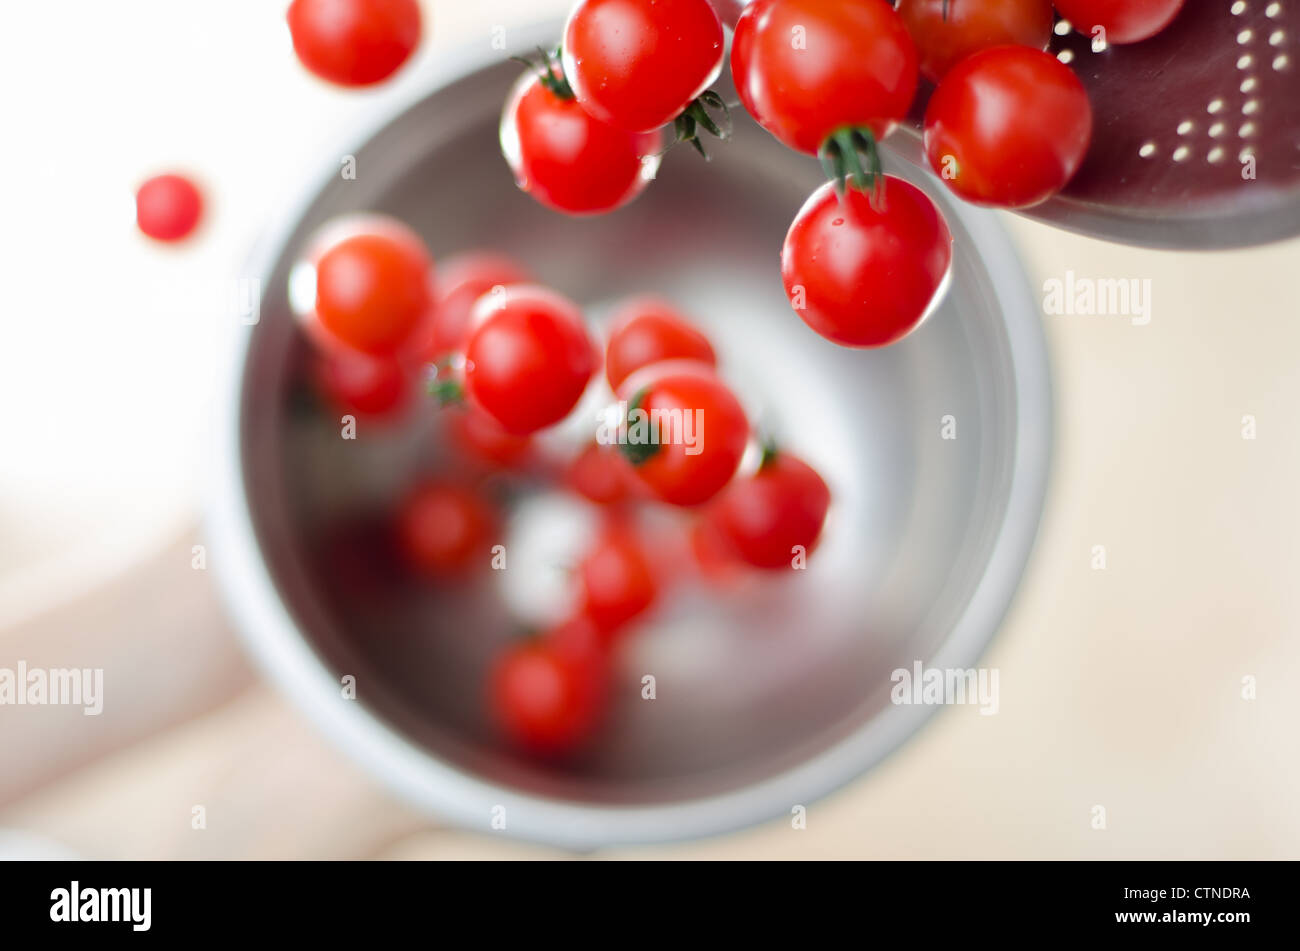 Tomates cerise mûre étant tombé, puis versez-la dans une passoire en métal argenté avec un fond blanc. Banque D'Images